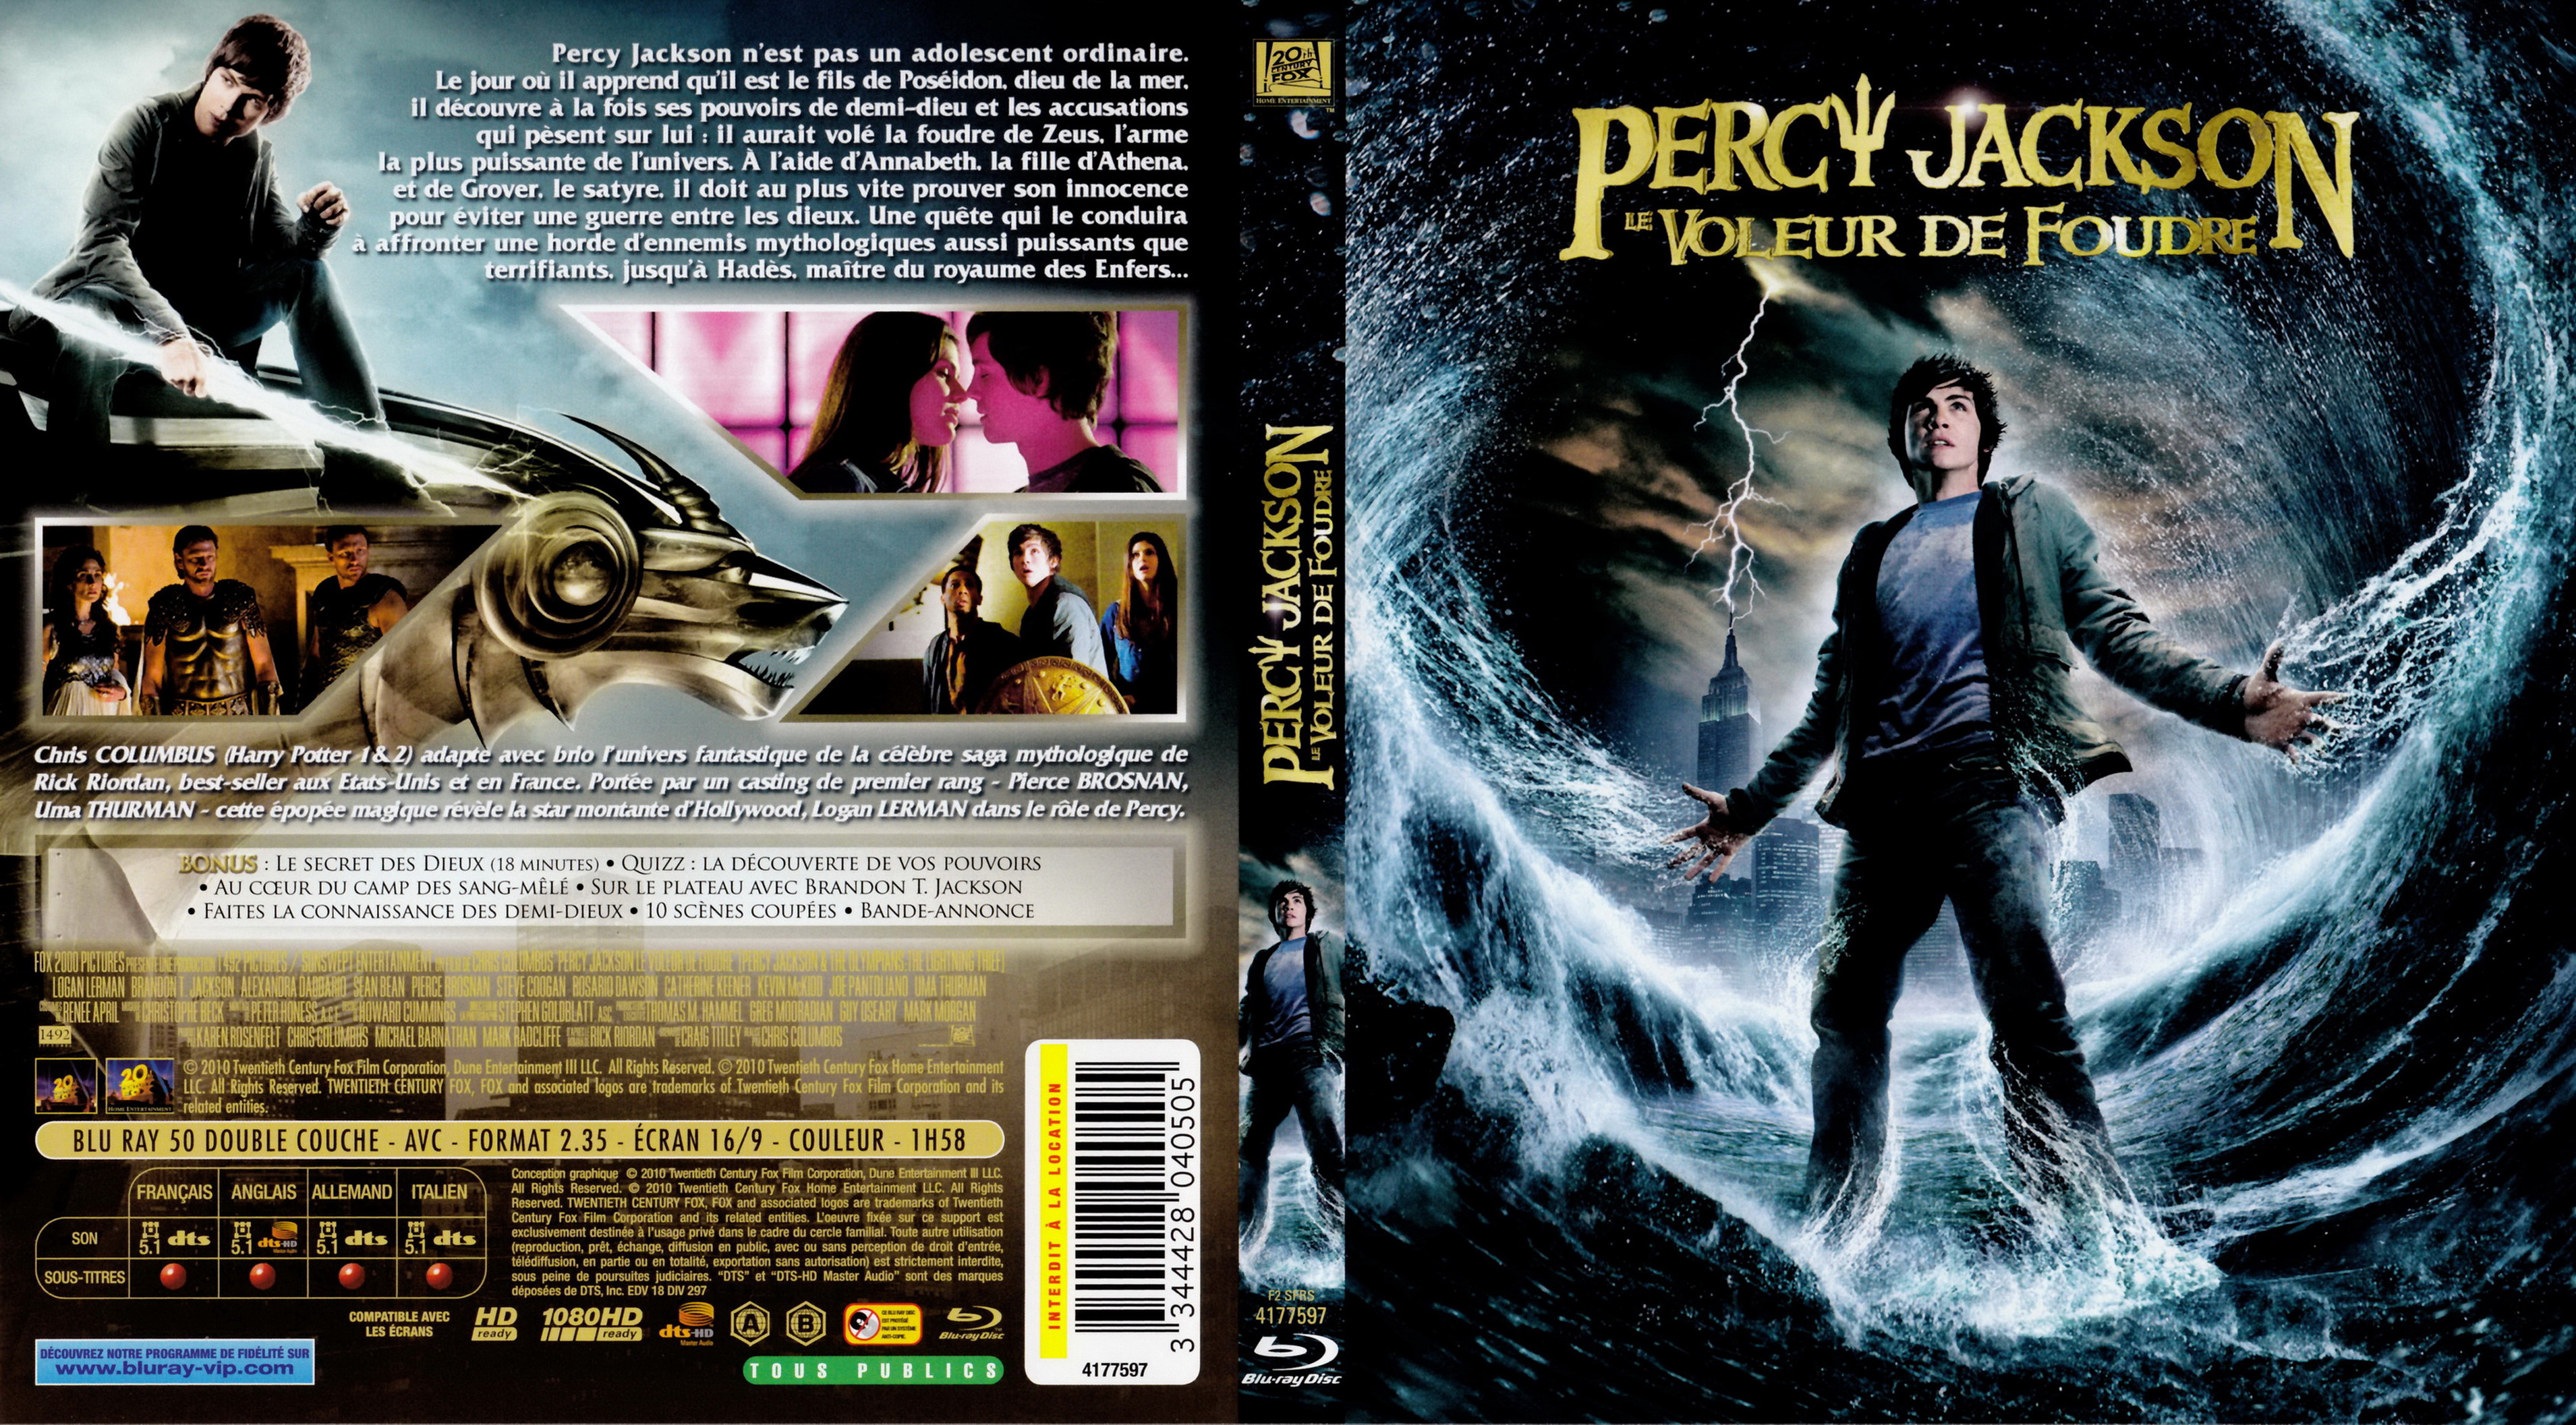 Jaquette DVD Percy Jackson le voleur de foudre (BLU-RAY)